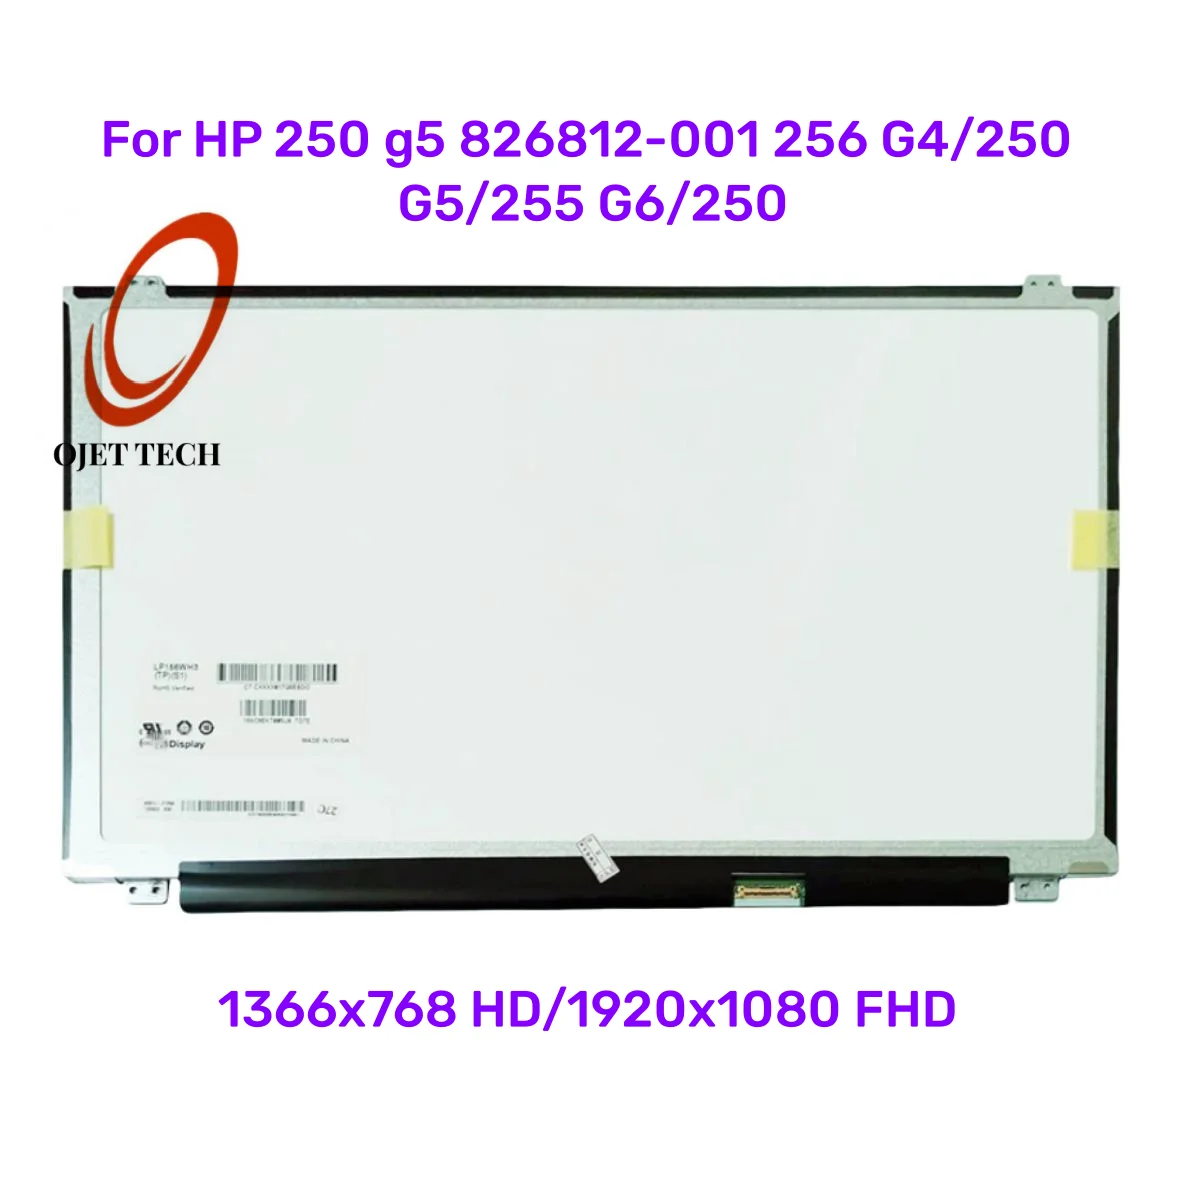 

ЖК-матрица 15,6 дюйма для ноутбука HP 250 g5 826812-001 256 G4/250 G5/255 G6/250, светодиодный экран HD FHD 30PIN EDP